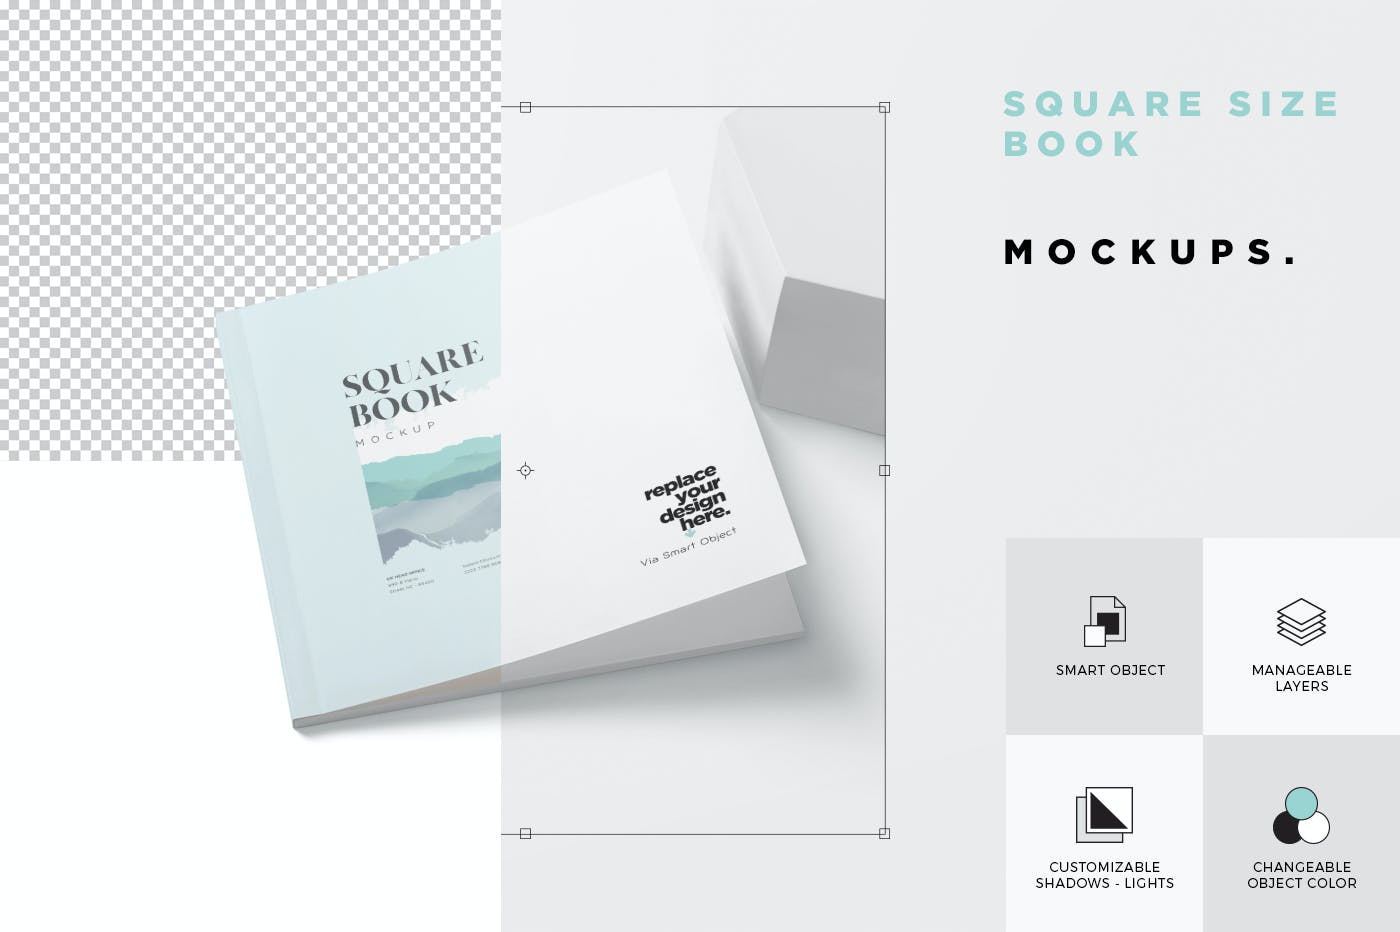 正方形书本/杂志排版效果图样机 Open & Close Square Size Book Mockups设计素材模板